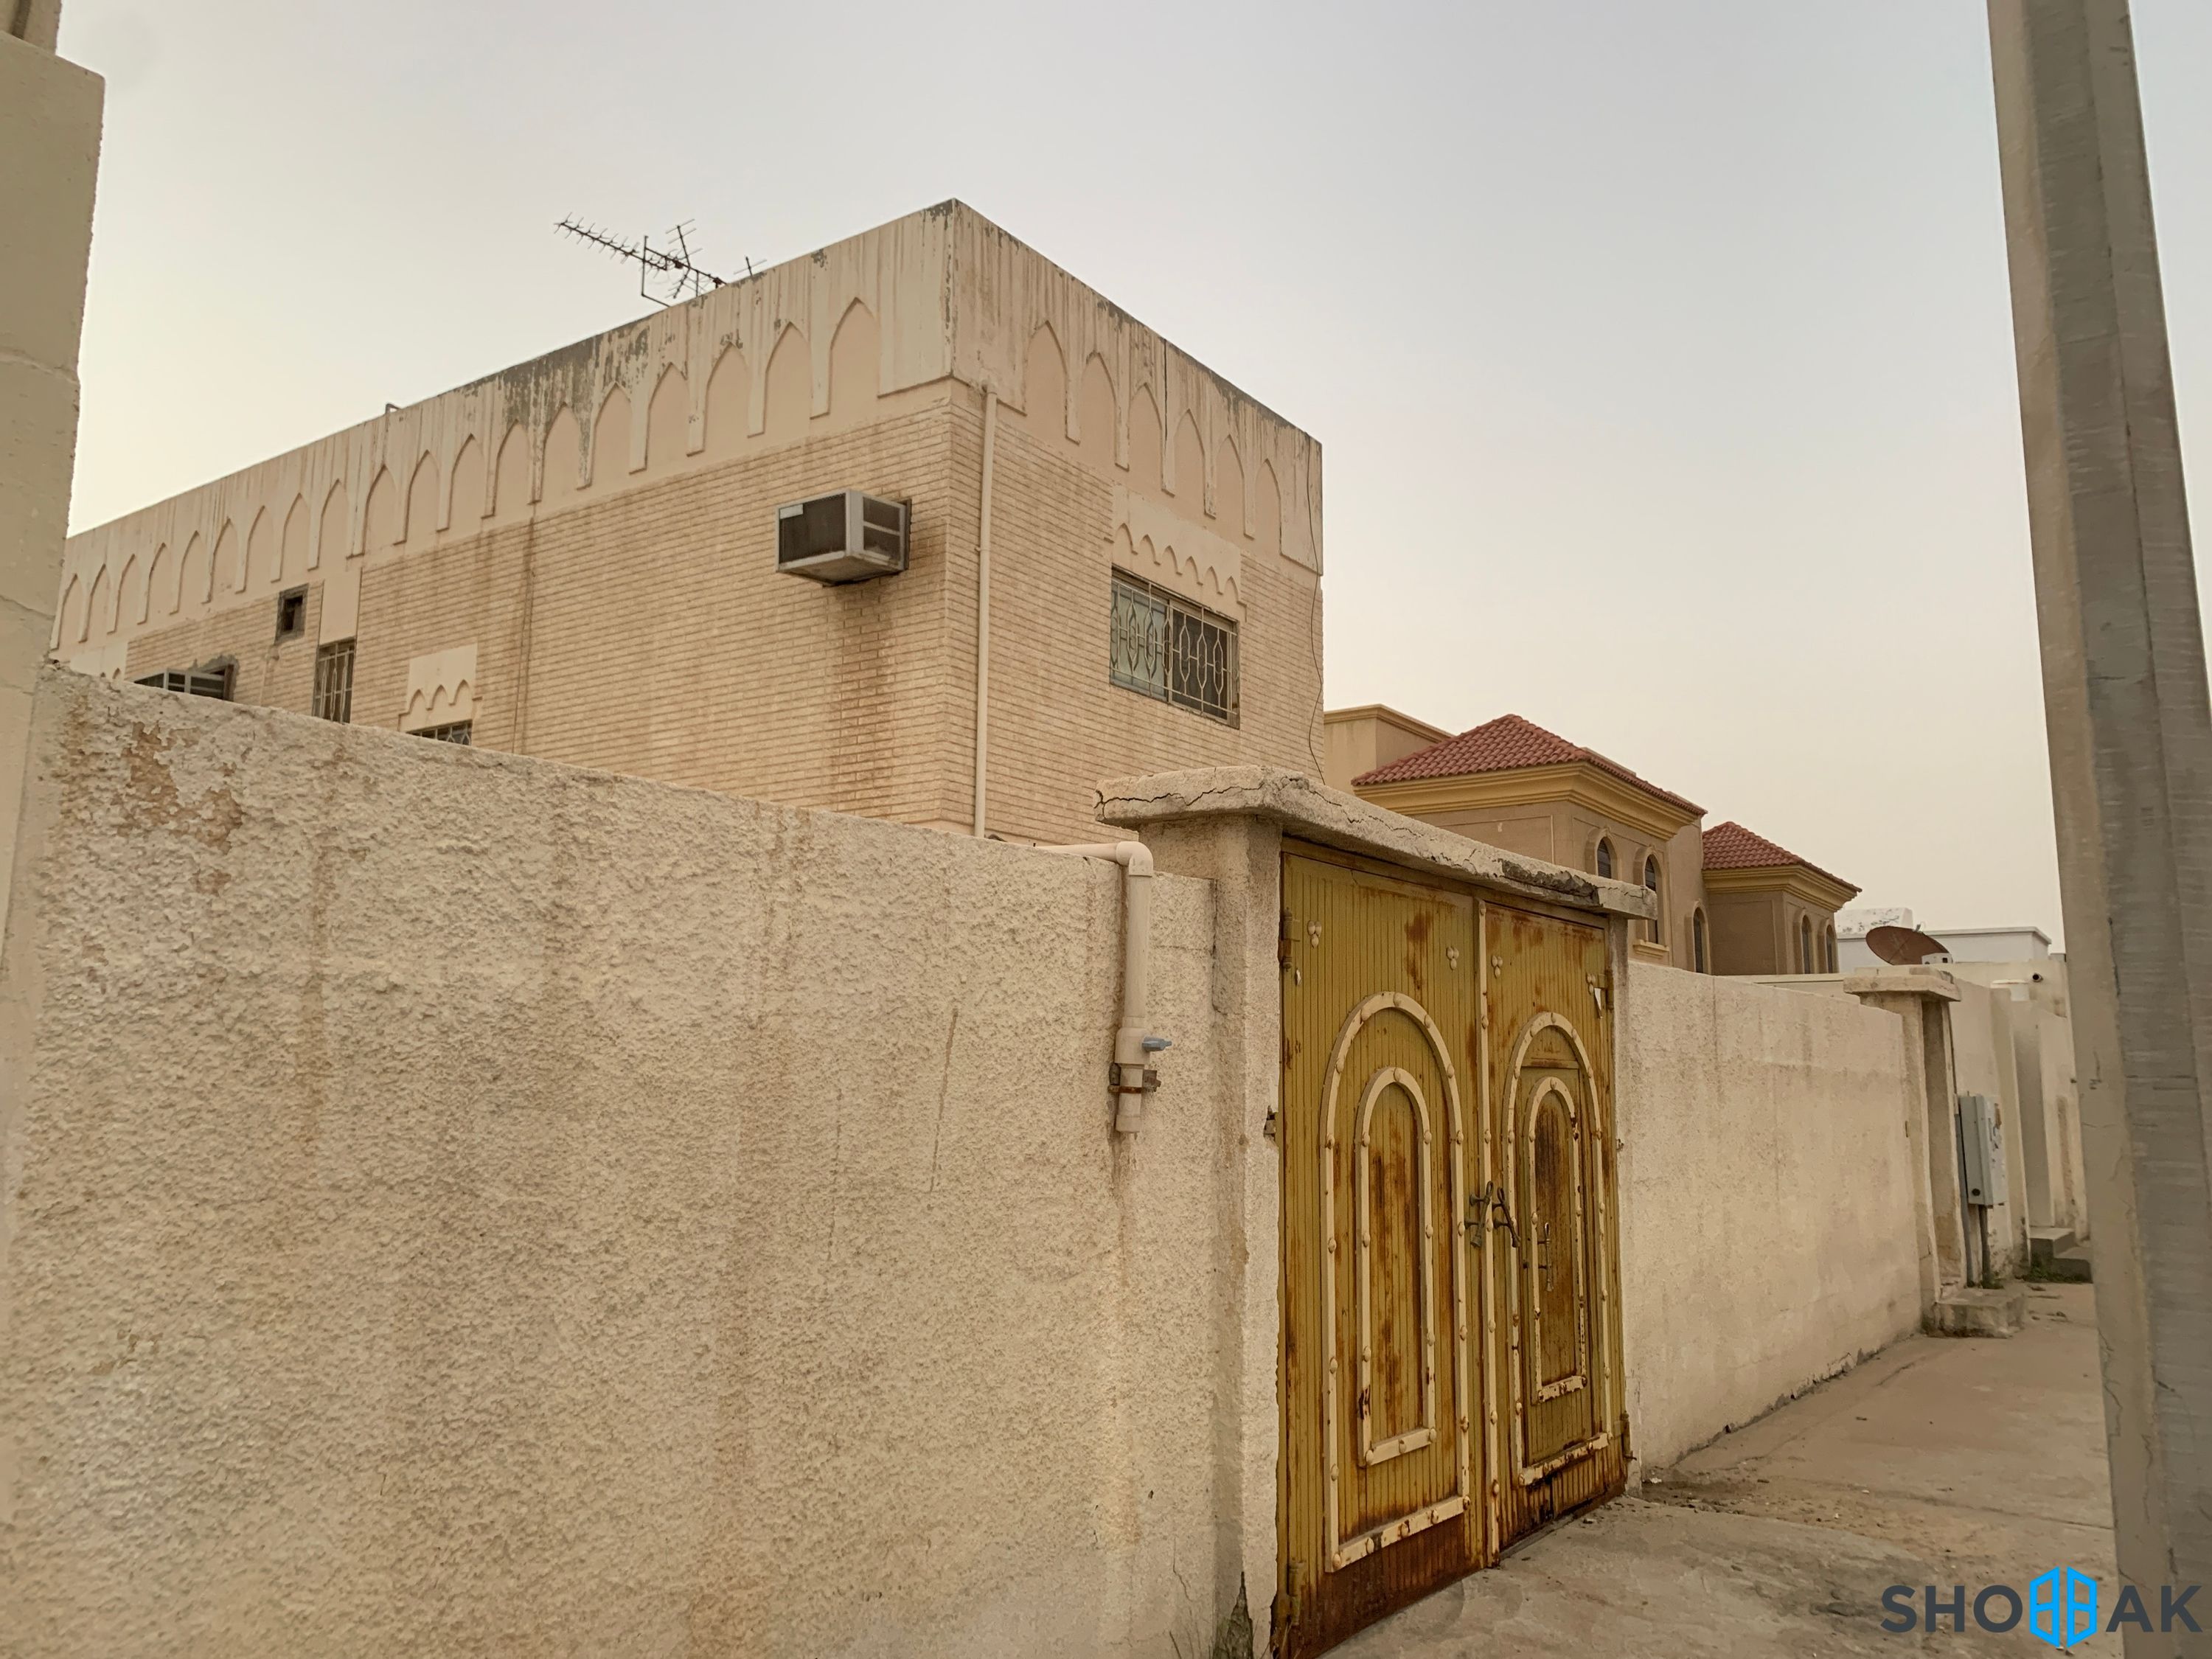 ارض للبيع شارع اسامة بن زيد حي الدوحة الجنوبية شباك السعودية